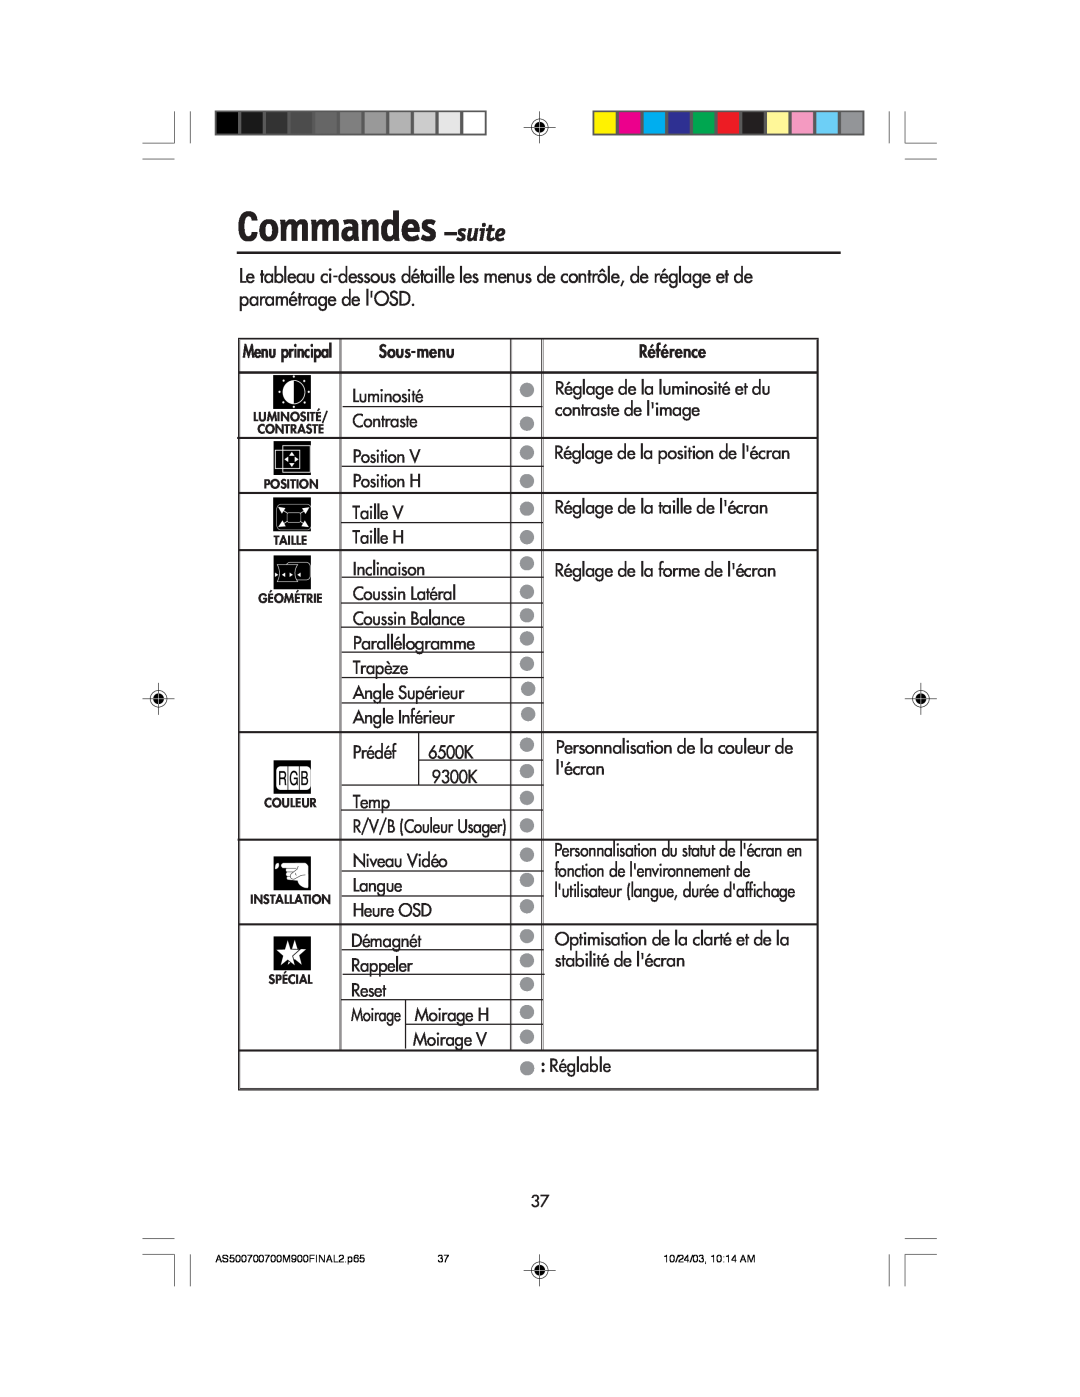 NEC 900 Commandes -suite, Moirage H, Menu principal, 6500K, R/V/B Couleur Usager, Personnalisation du statut de lŽcran en 